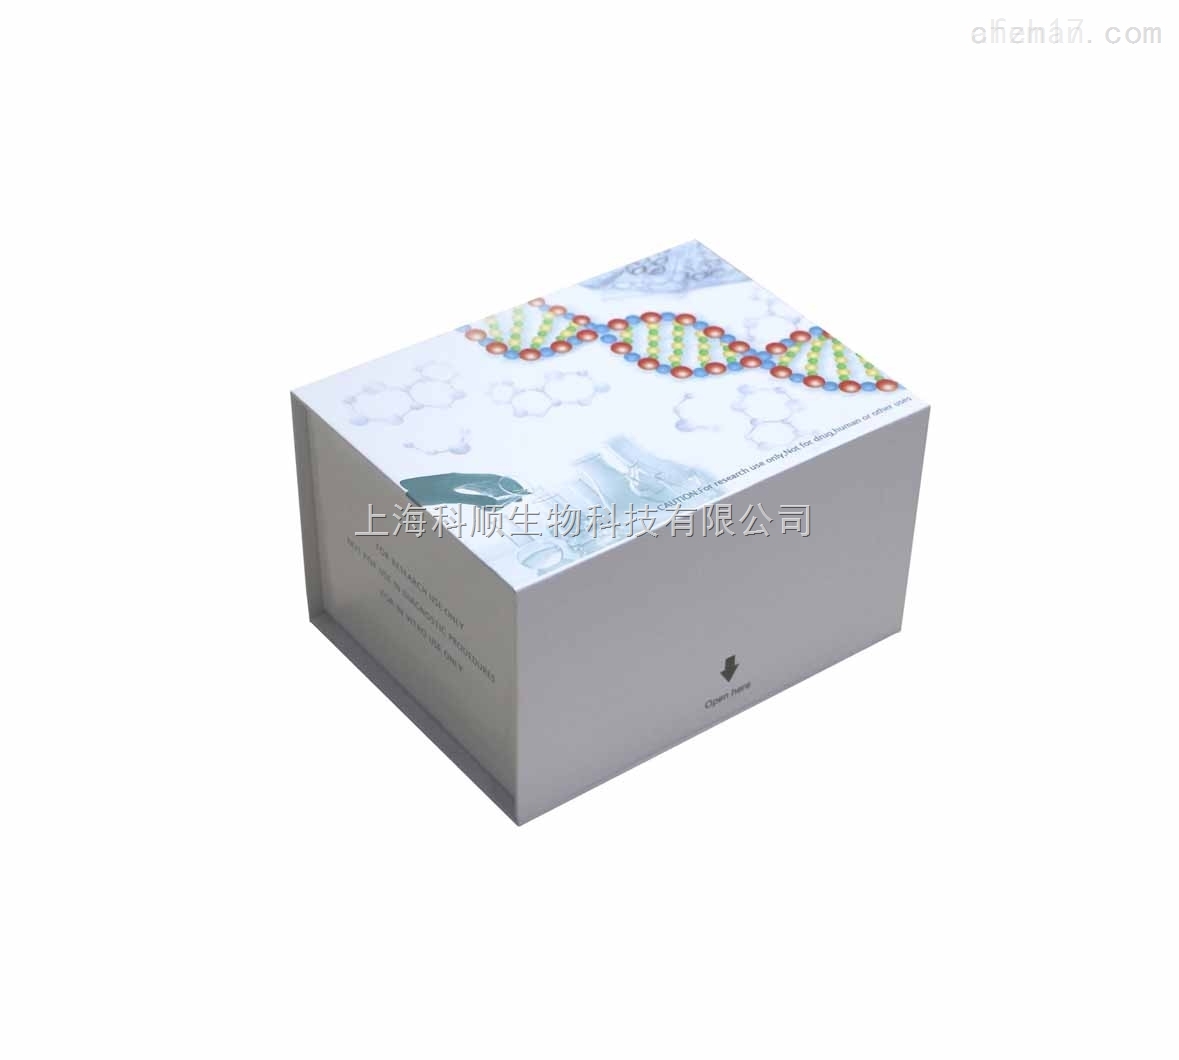 1,3-βD-Glu  ELISA检测试剂盒，小鼠ELISA检测试剂盒